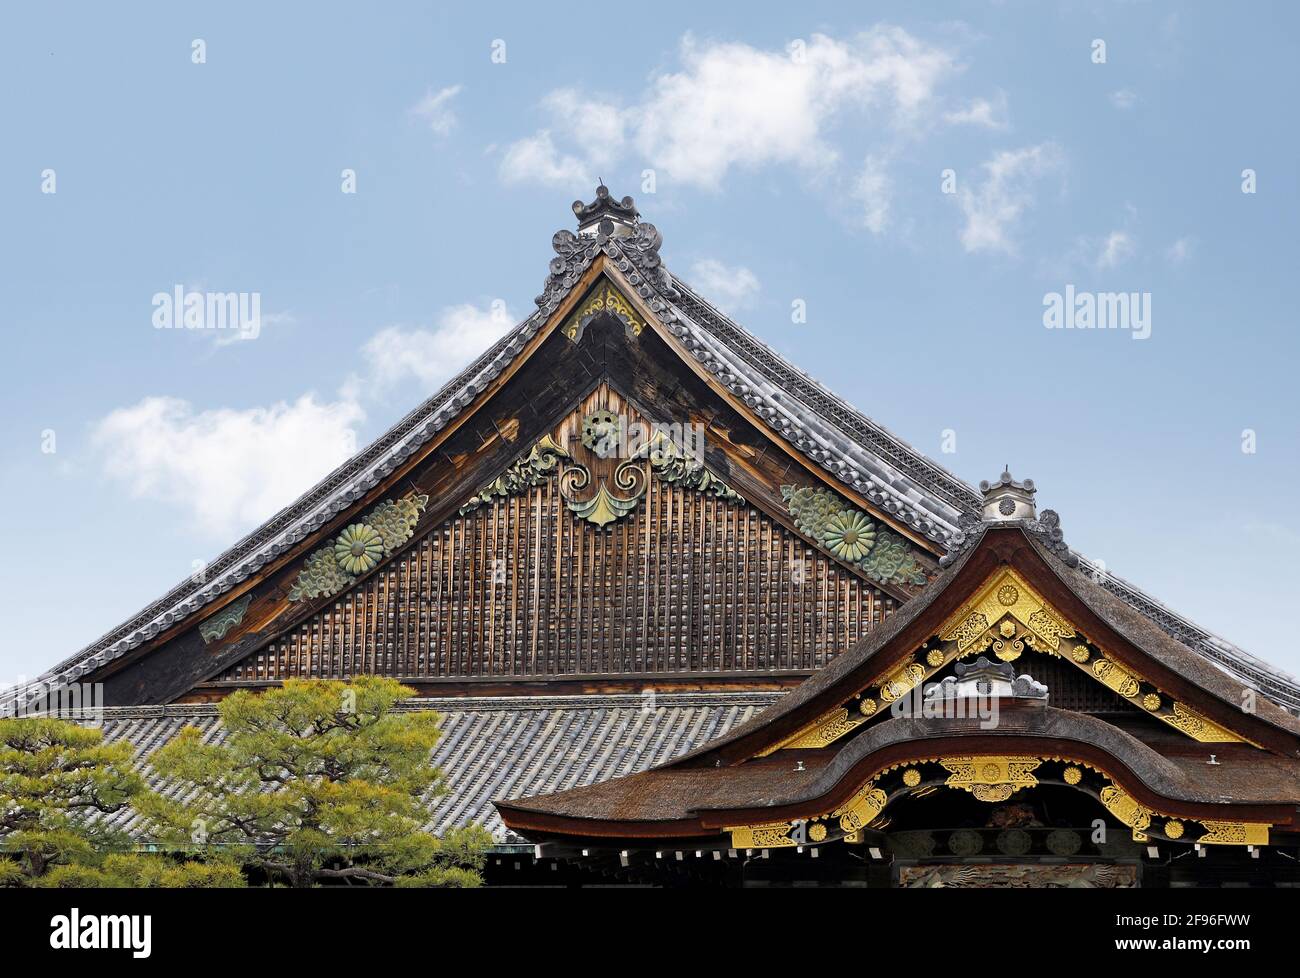 Toits décorés de façon traditionnelle, d'architecture japonaise ancienne en bois Banque D'Images